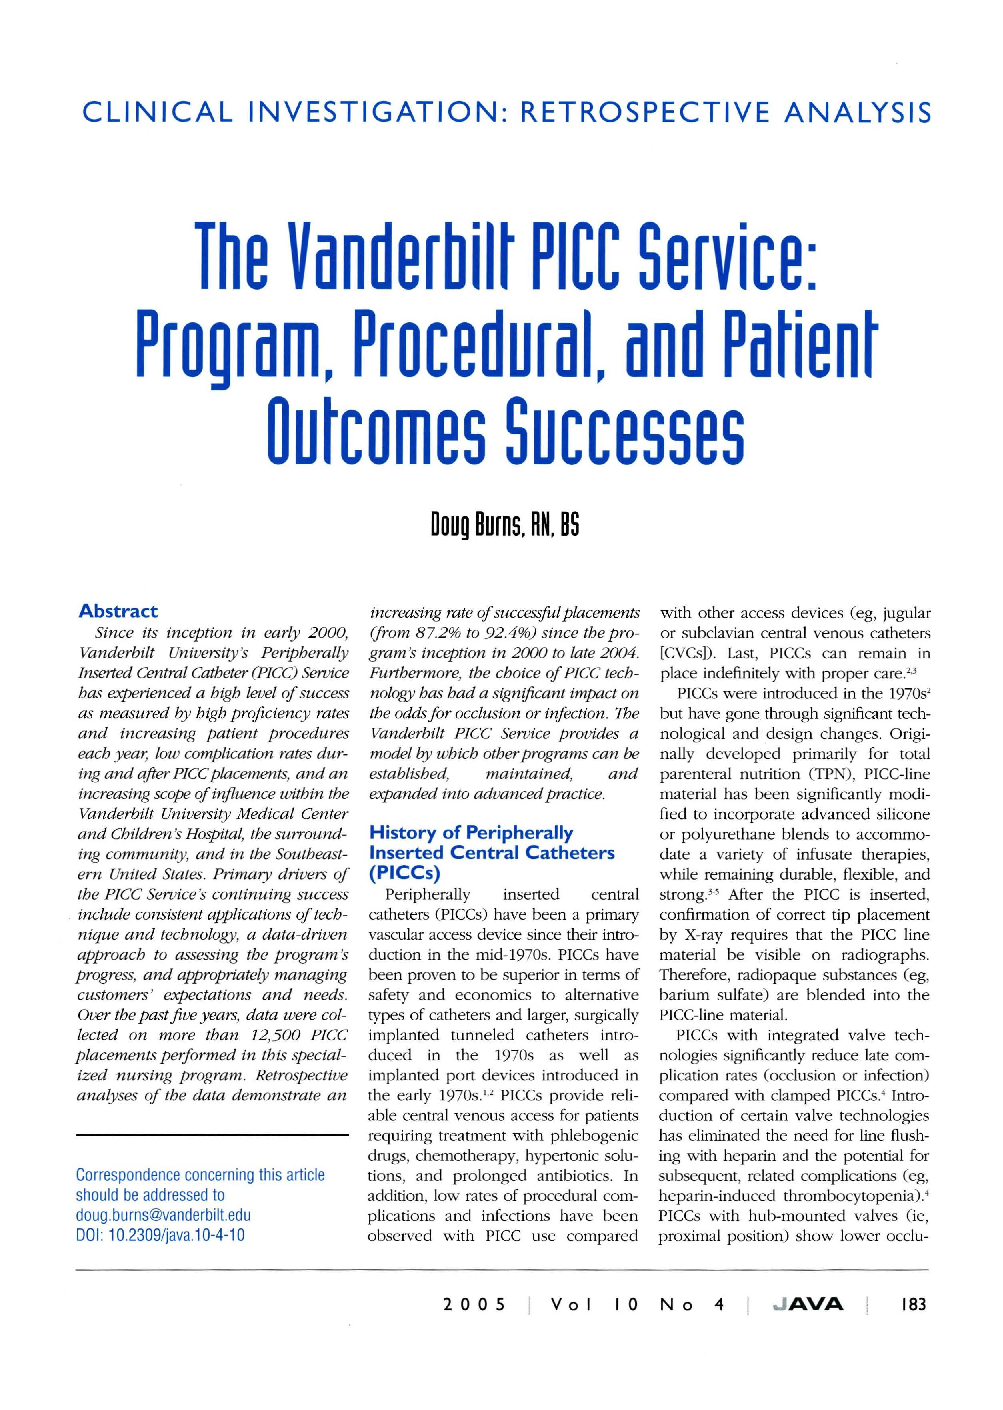 Clinical Investigation: Retrospective Analysis - The Vanderbilt PICC Service: Program, Procedural, and Patient Outcomes Successes